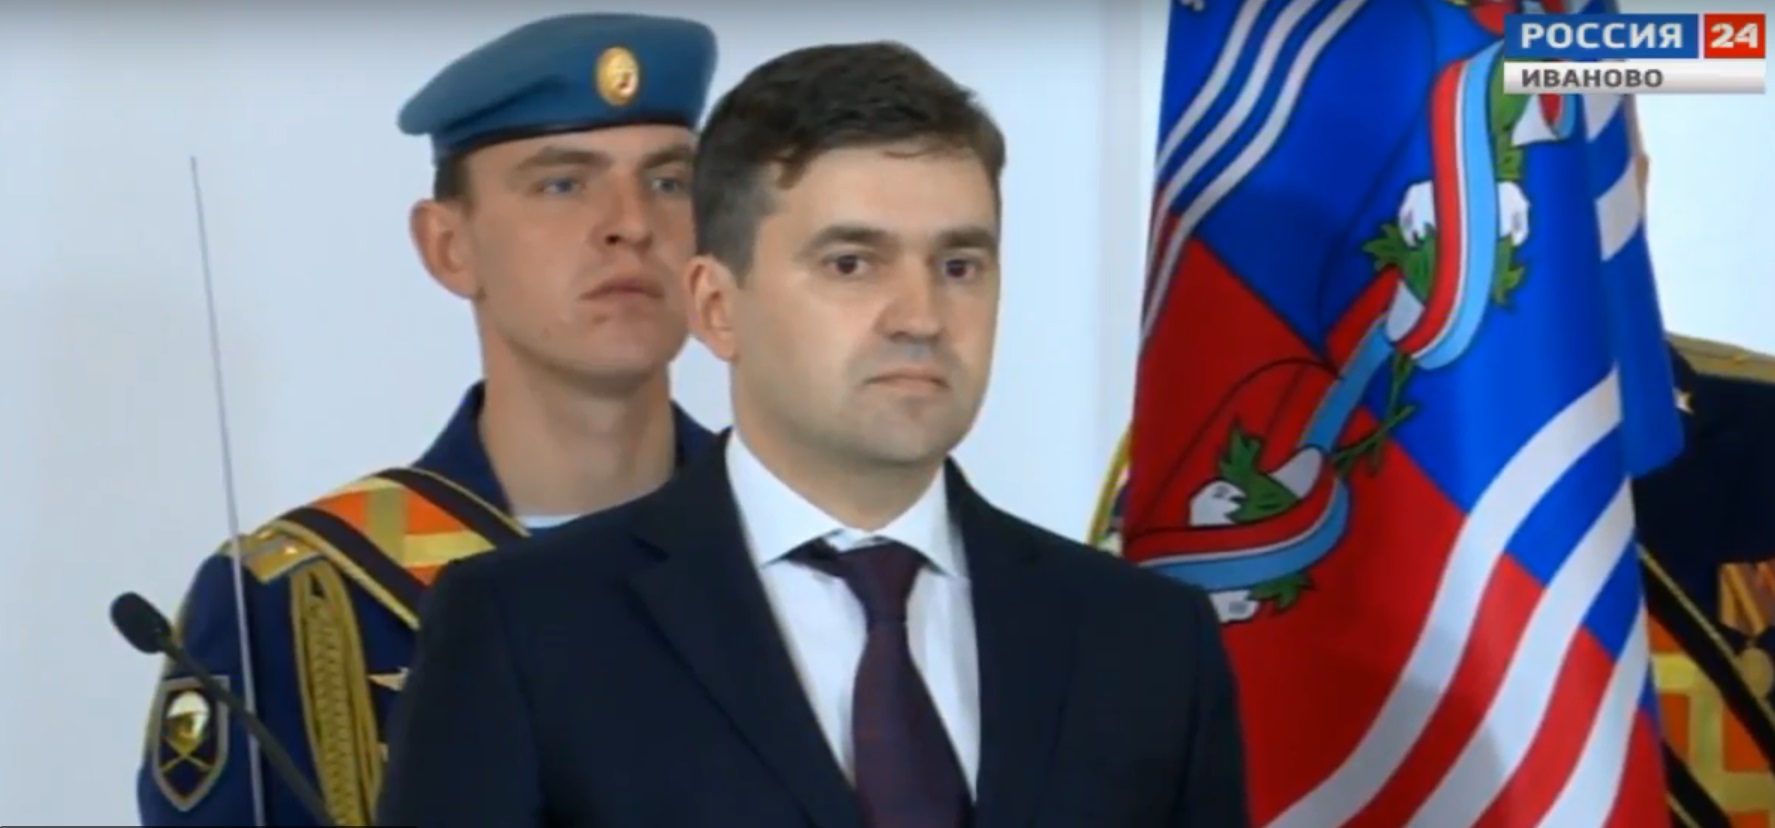 Станислав Воскресенский официально вступил в должность губернатора Ивановской области